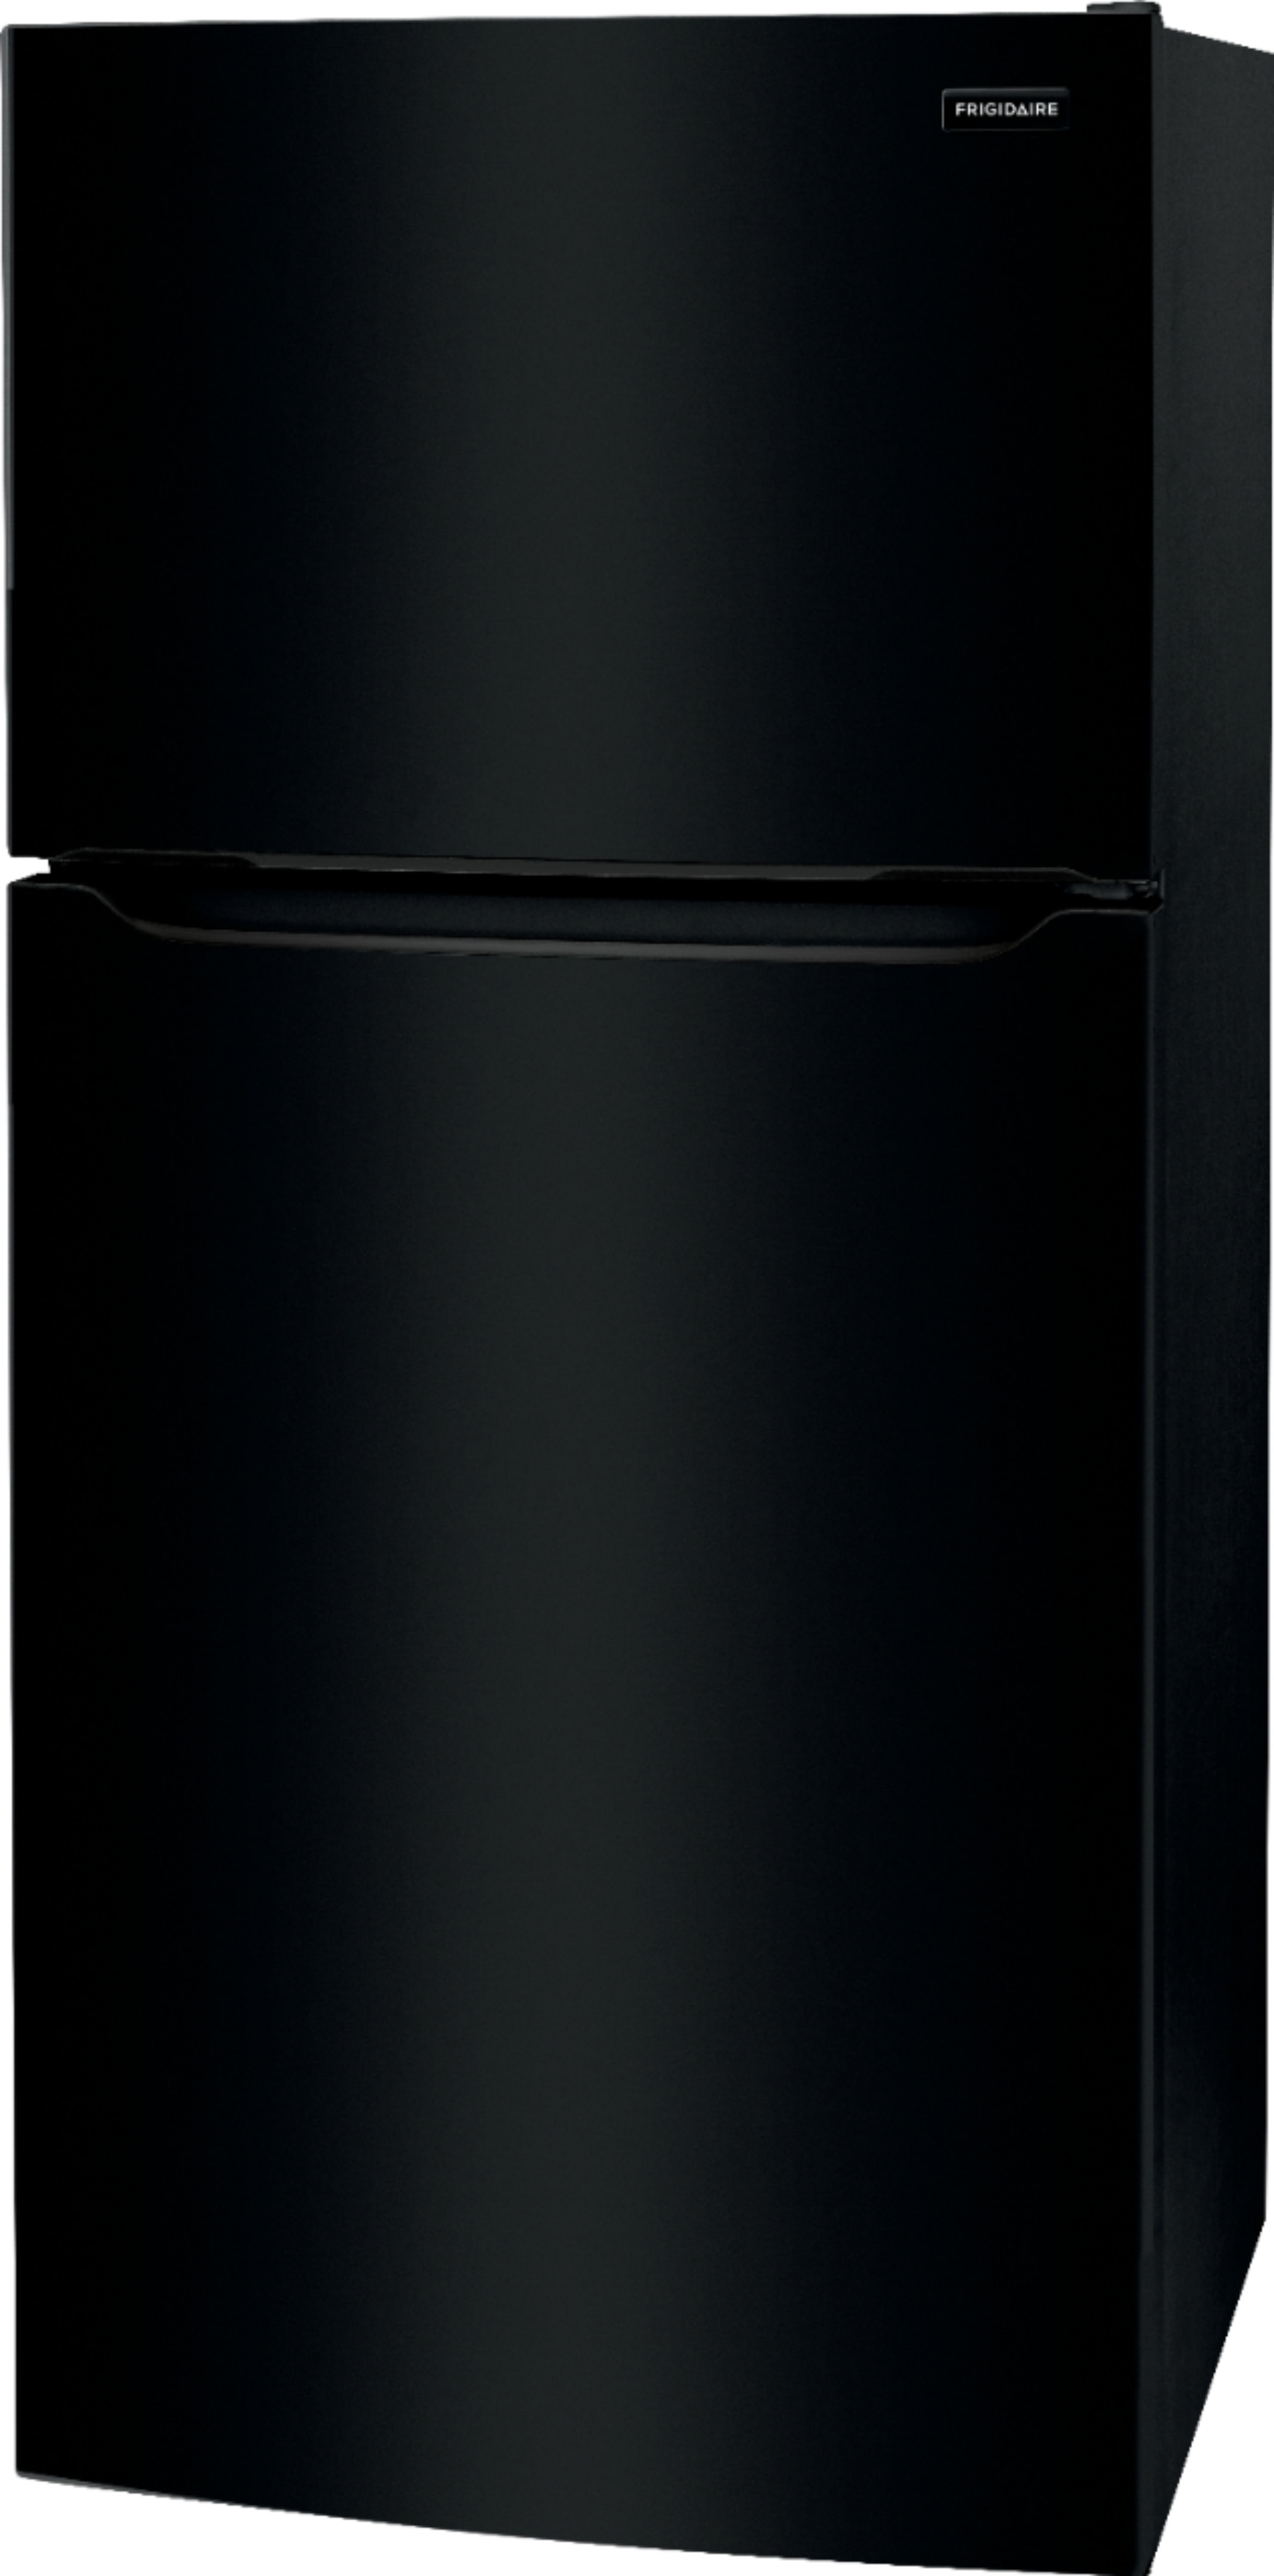 Left View: Frigidaire - 18.3 Cu. Ft. Top-Freezer Refrigerator - Black